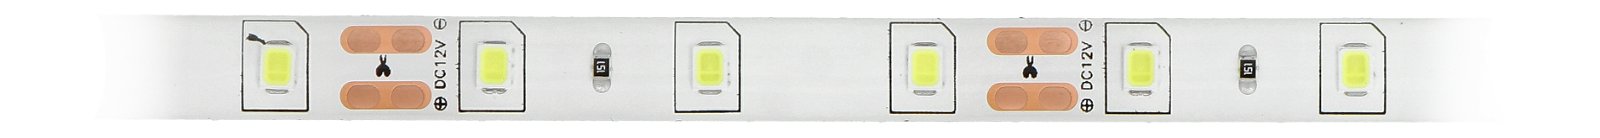 Pasek LED SMD3528 IP65 4,8W, 60 diod/m, 8mm, barwa zimna - 5m